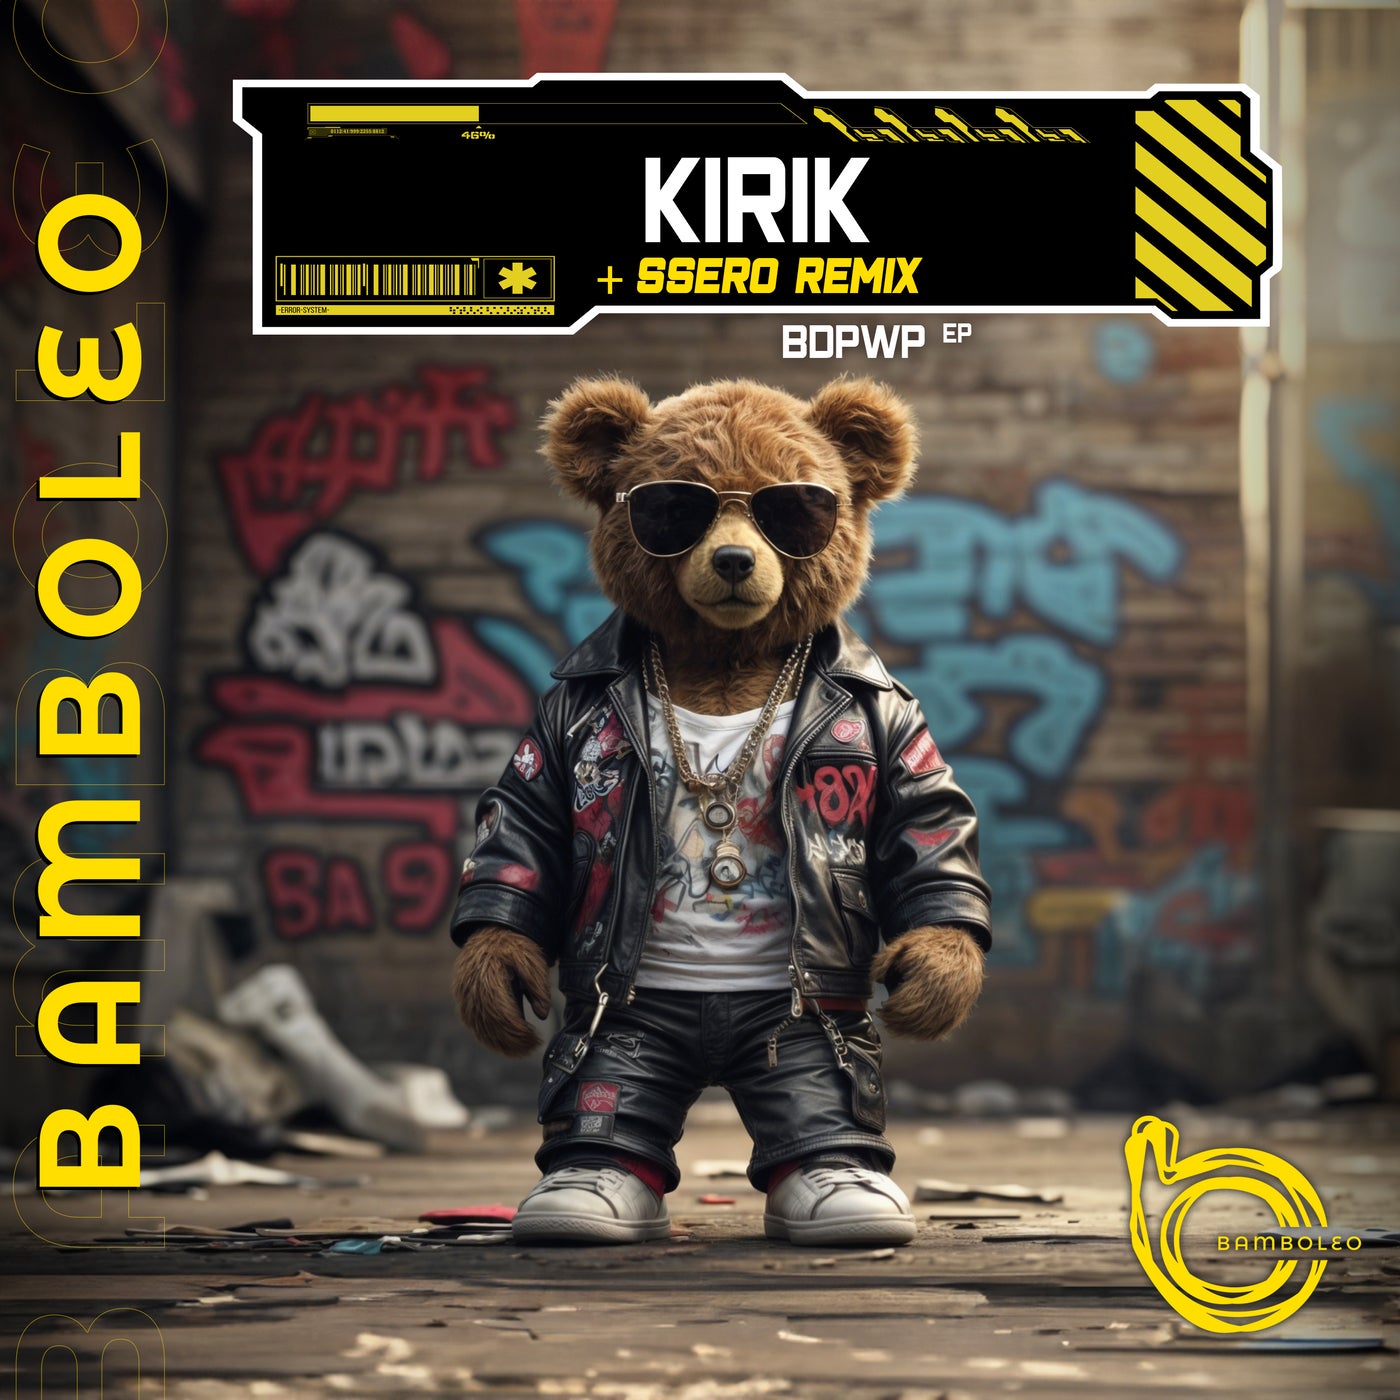 image cover: KIRIK - Bdpwp EP on Bamboleo